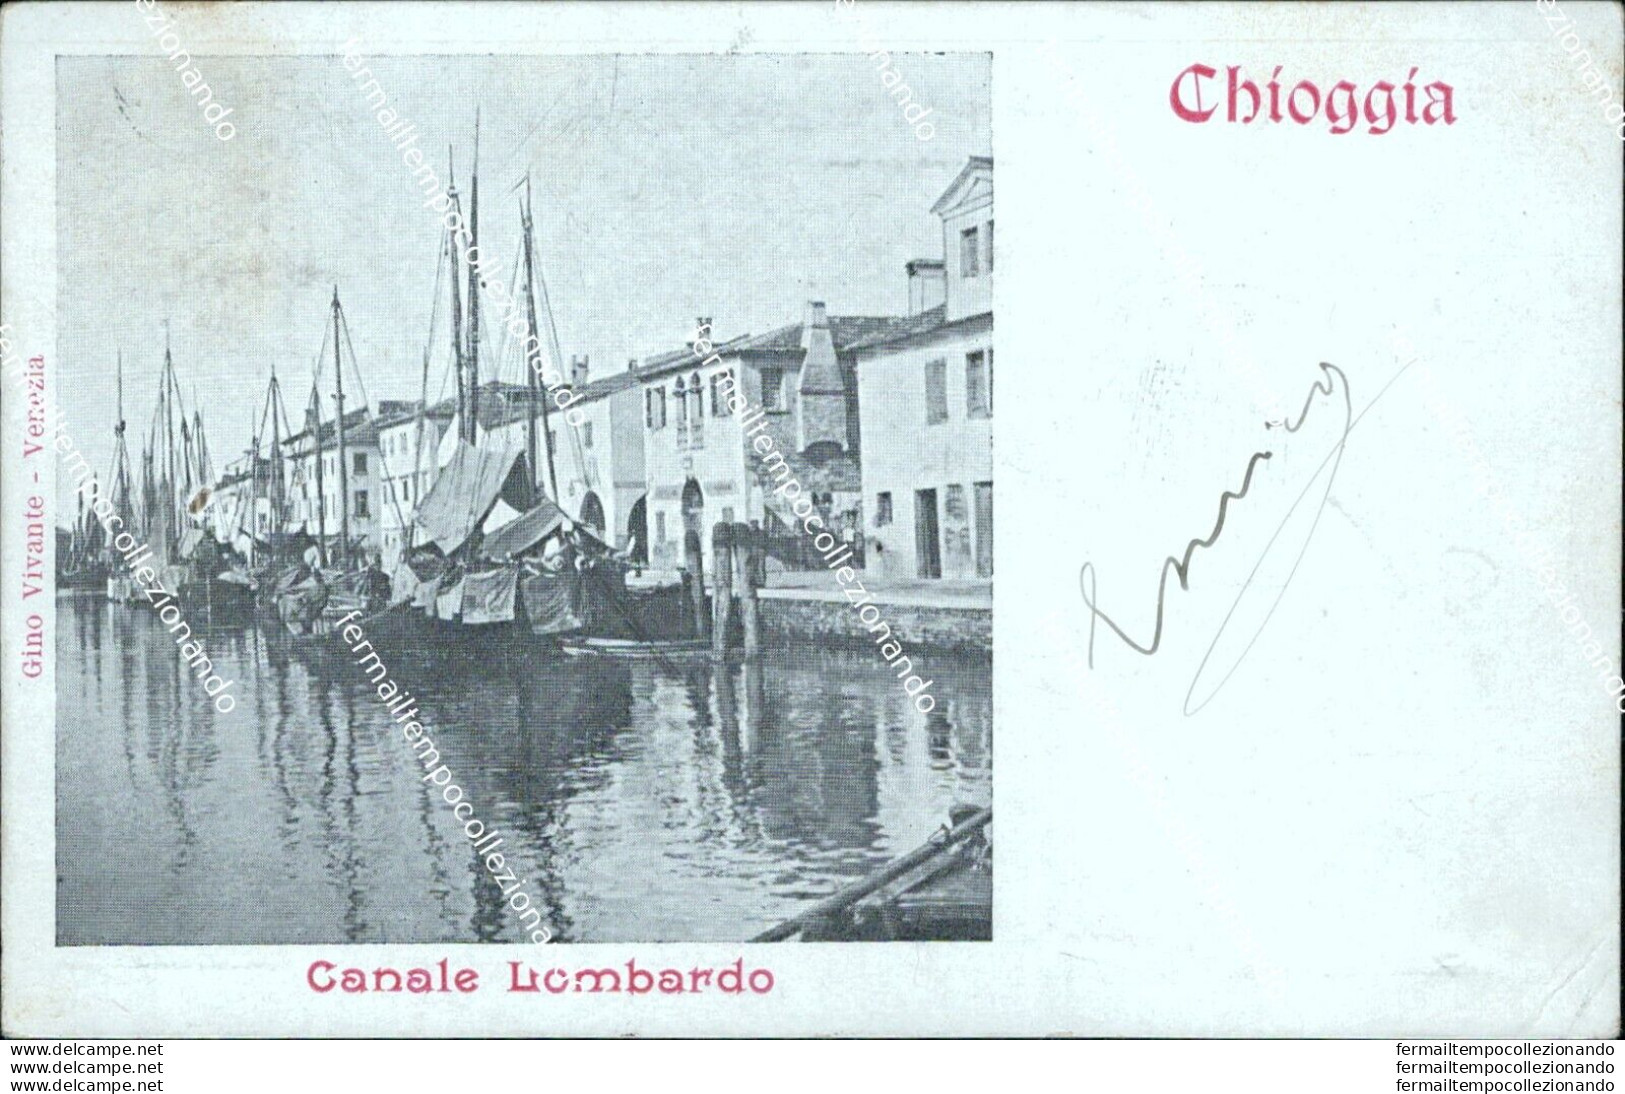 As604 Cartolina Chioggia Canale Lombardo Venezia - Venezia